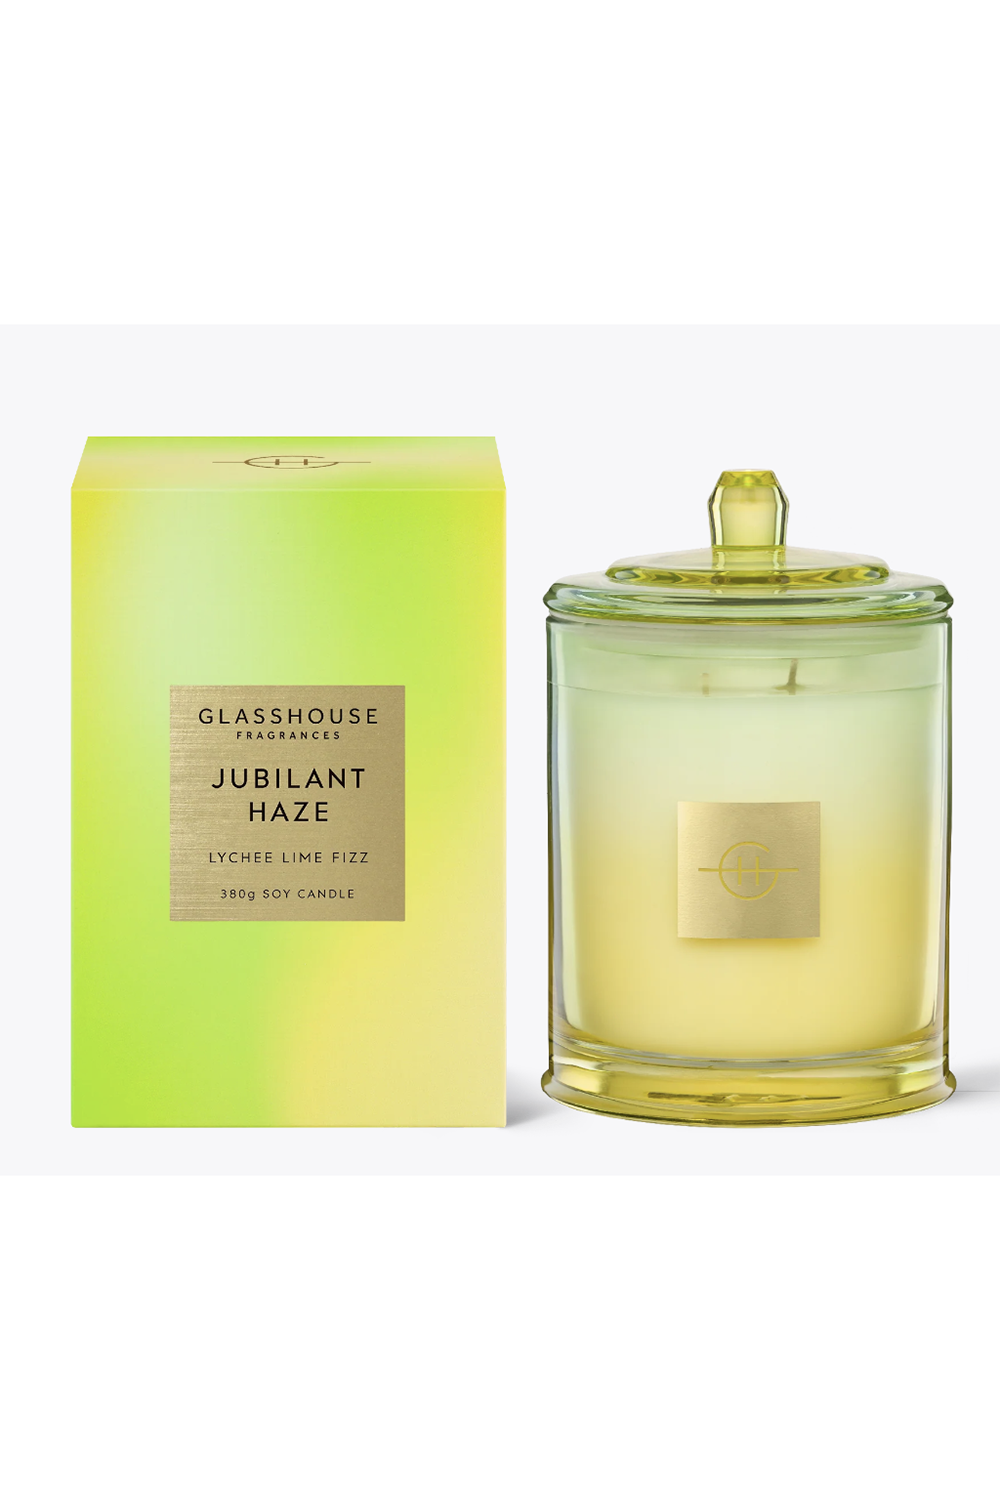 Glasshouse Fragrance Candle - Jubilant Haze